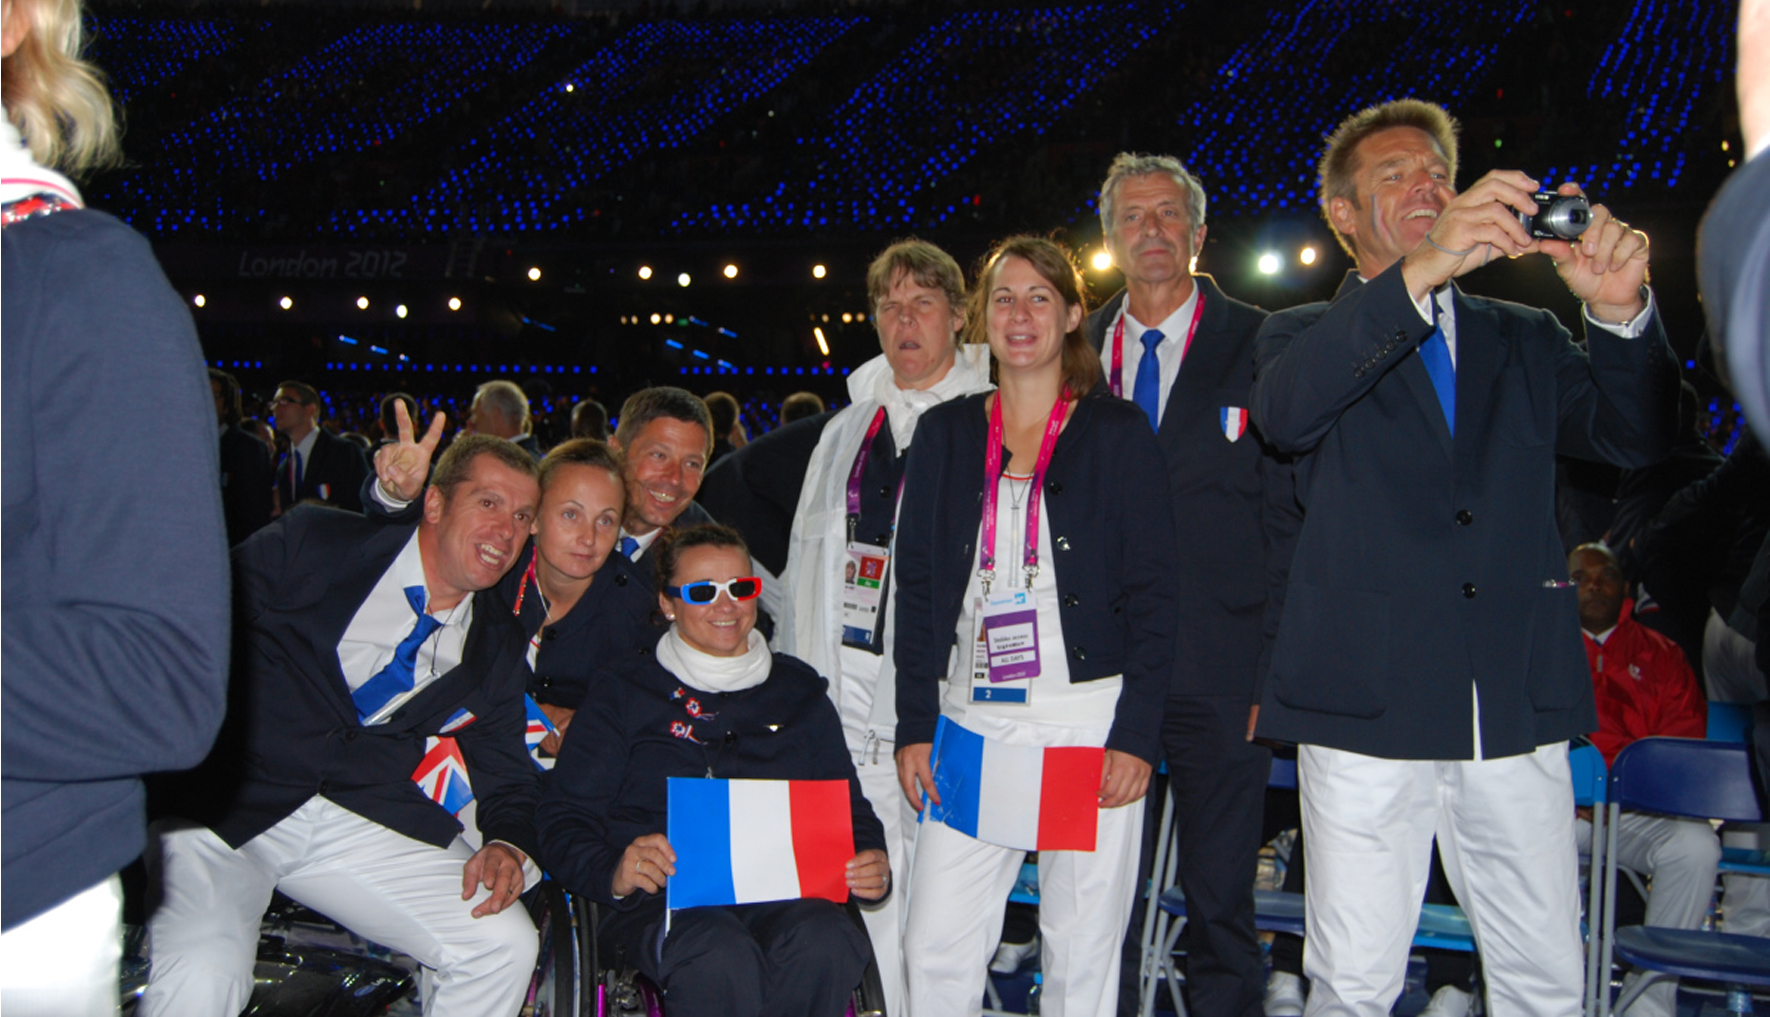 VladimirVonchon-Jeuxparalympique-londre 2012 (4)